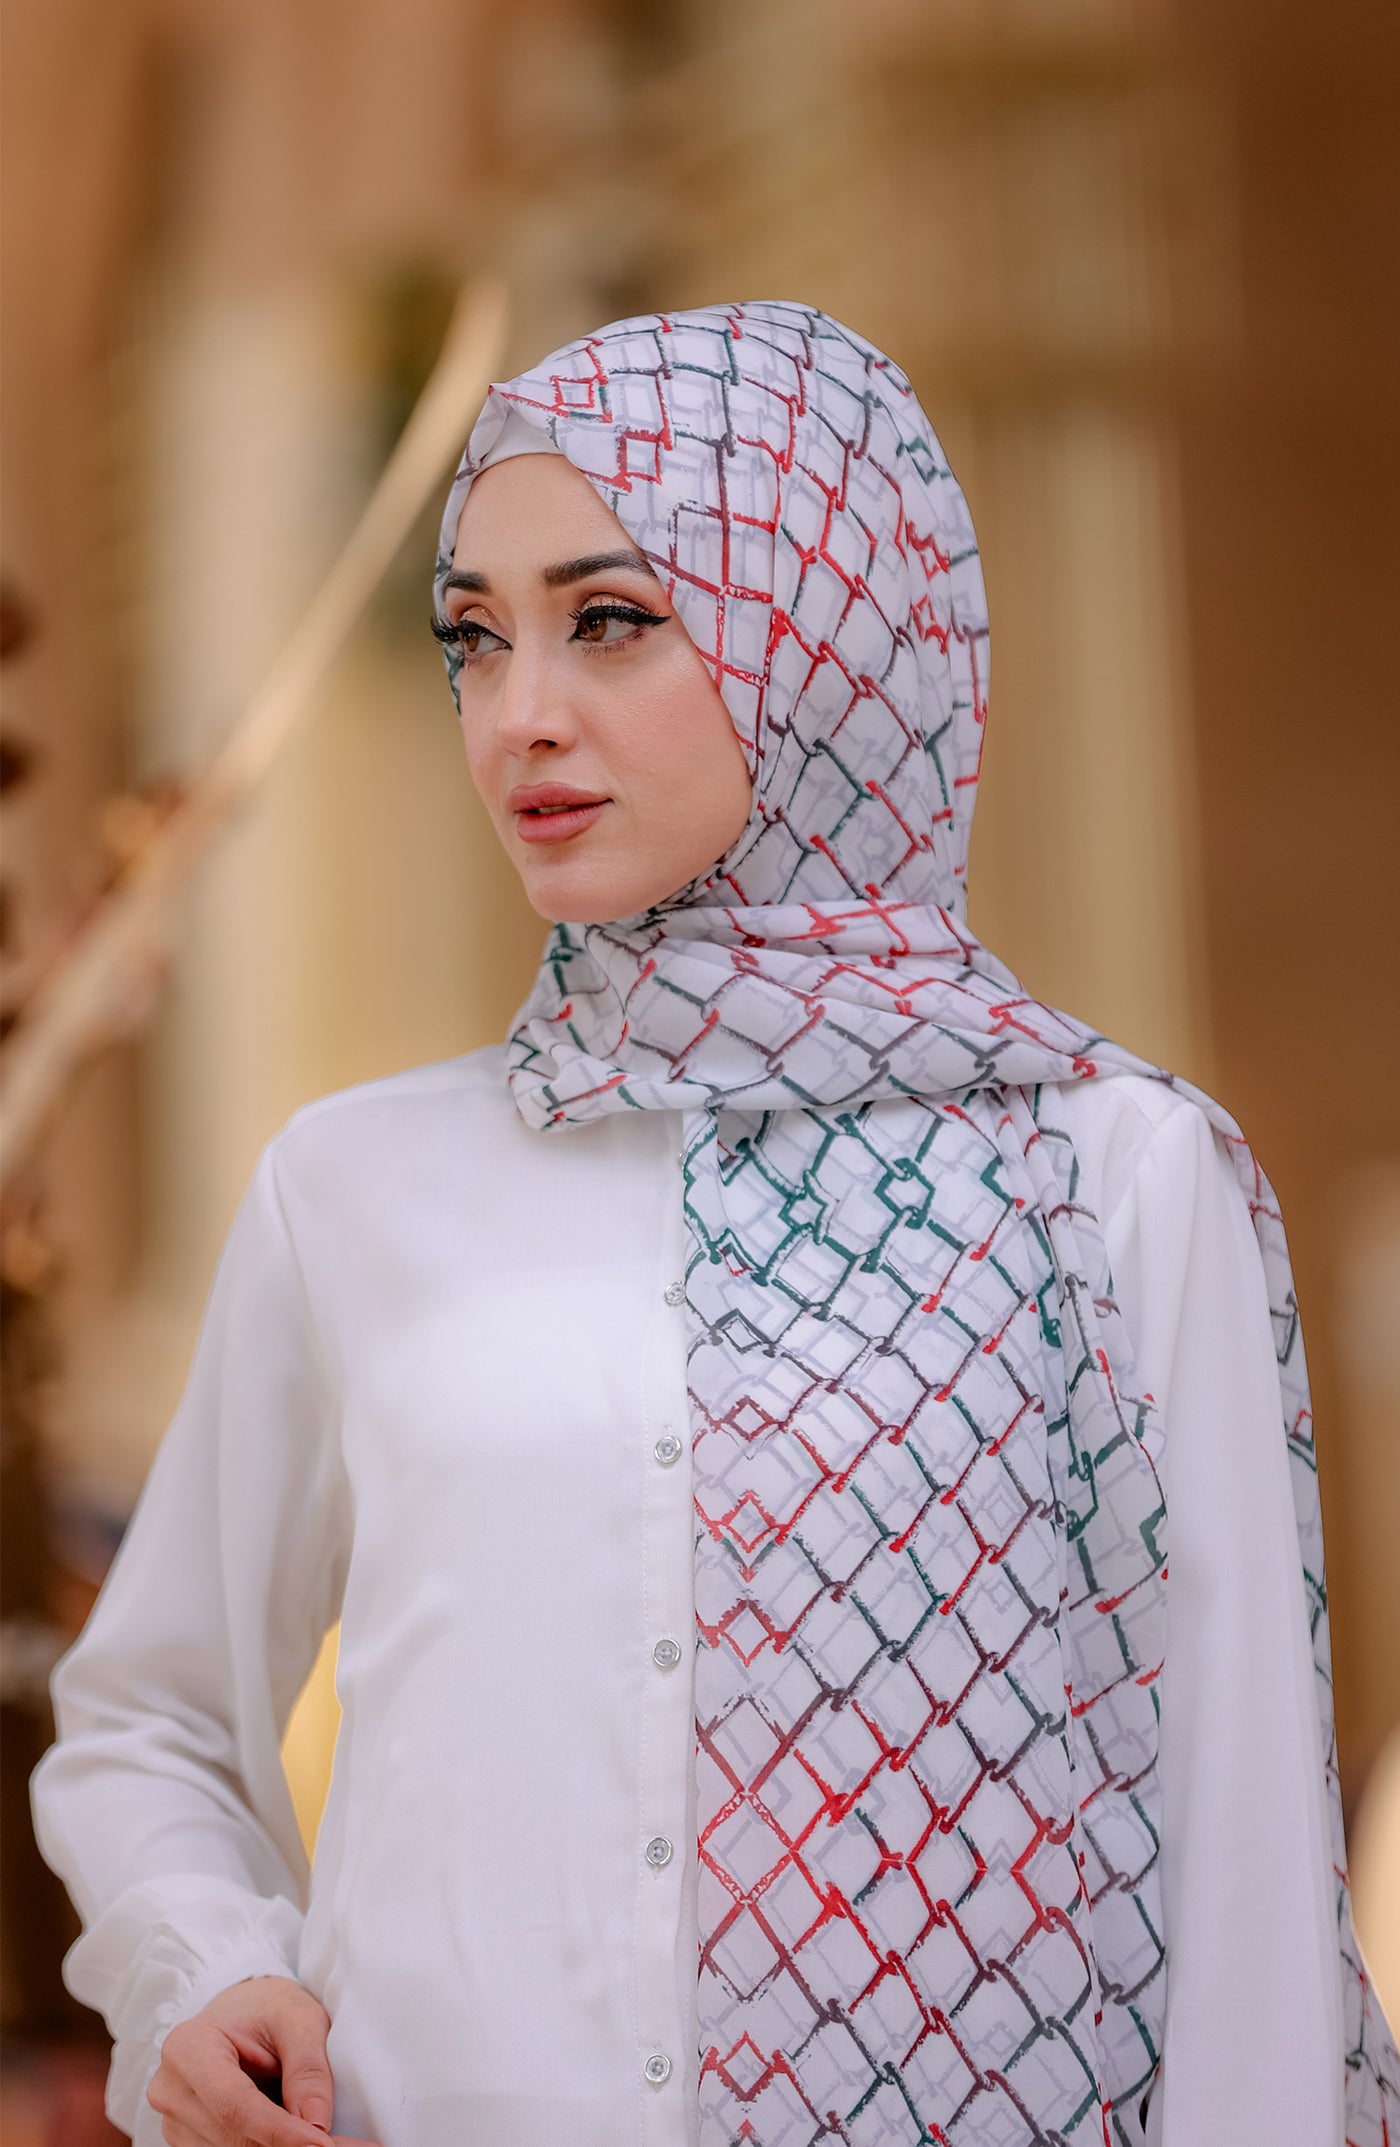 stylish white palestine hijab in geometric pattern